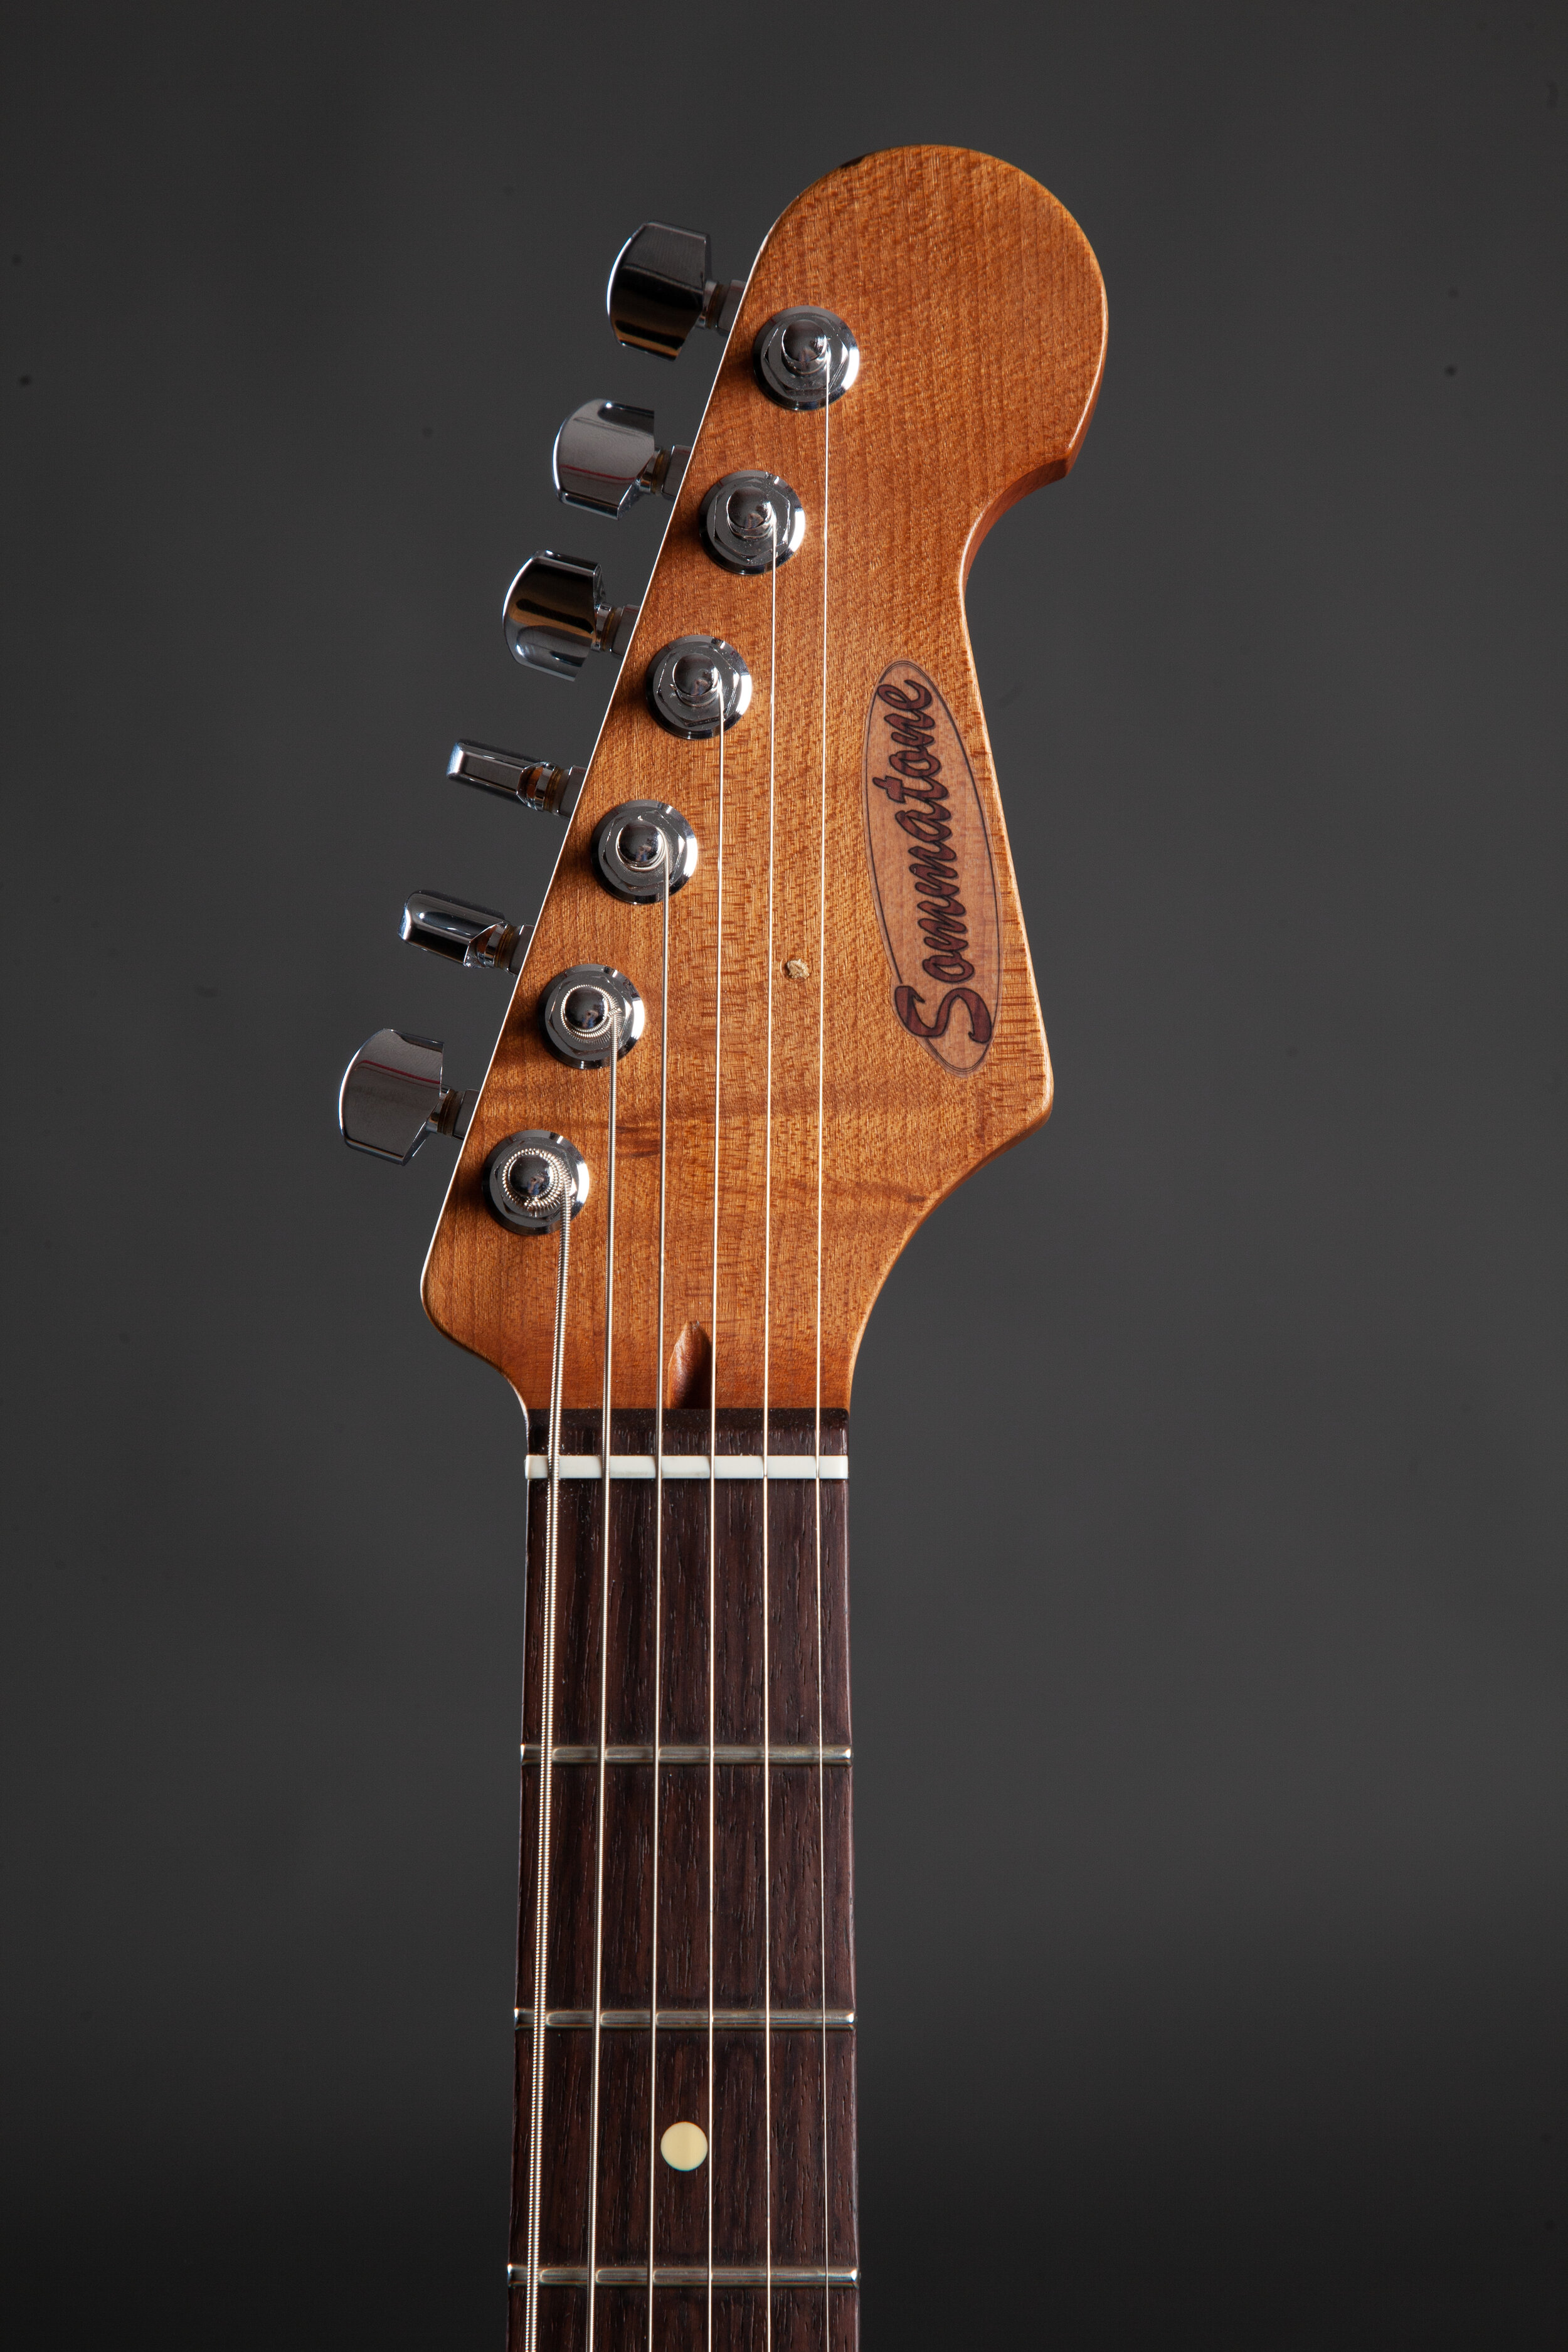 Jakes-Guitars-6496-HighRes.jpg